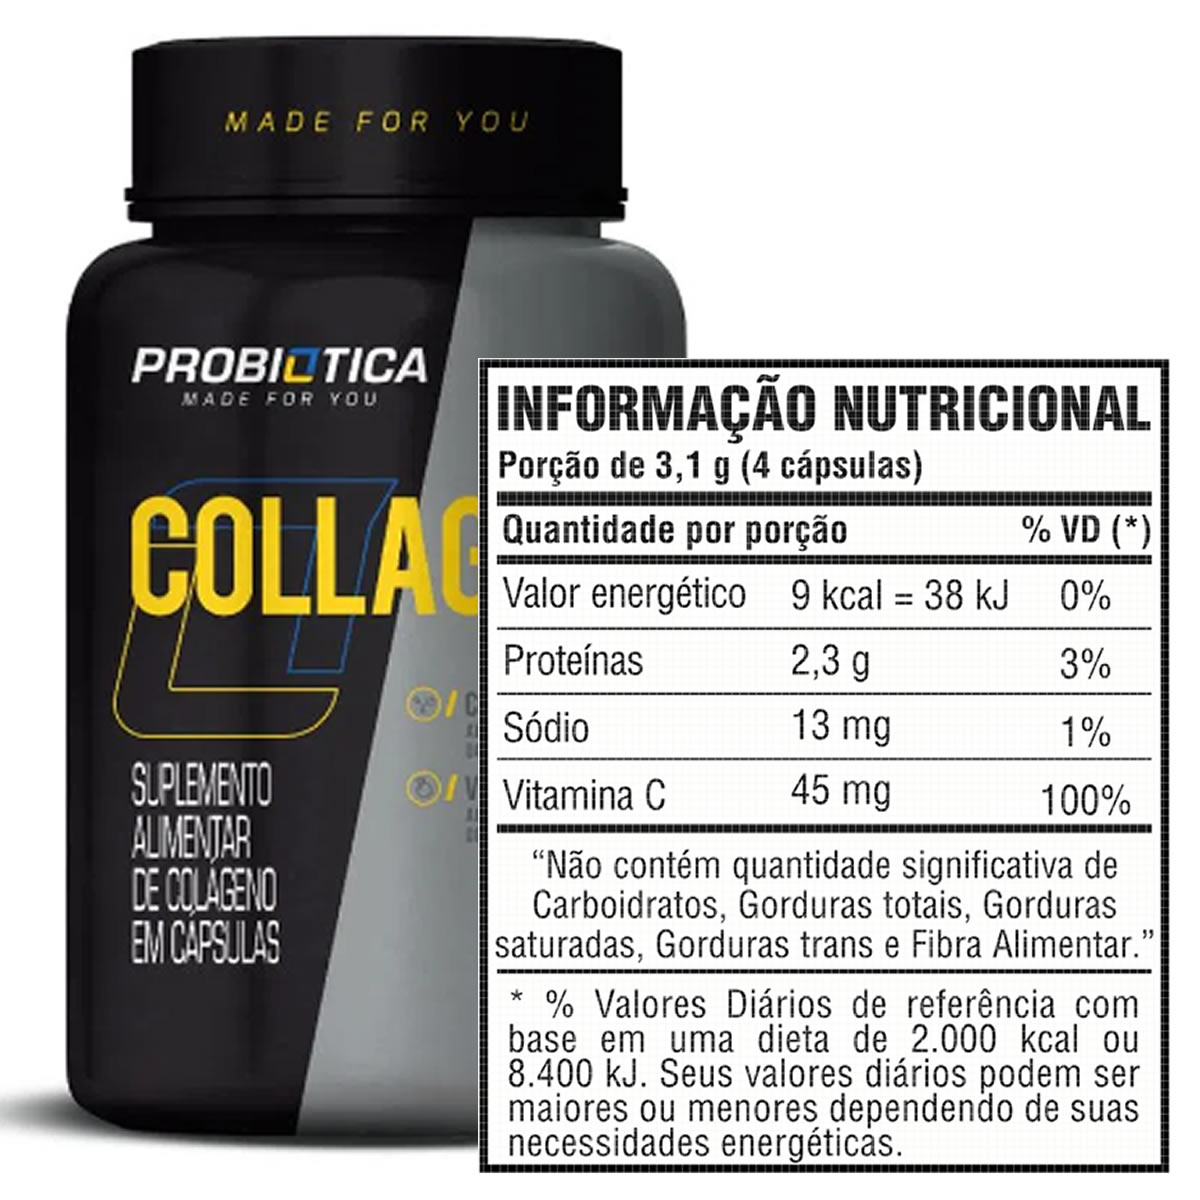 Collagen 120 Cápsulas - Probiótica